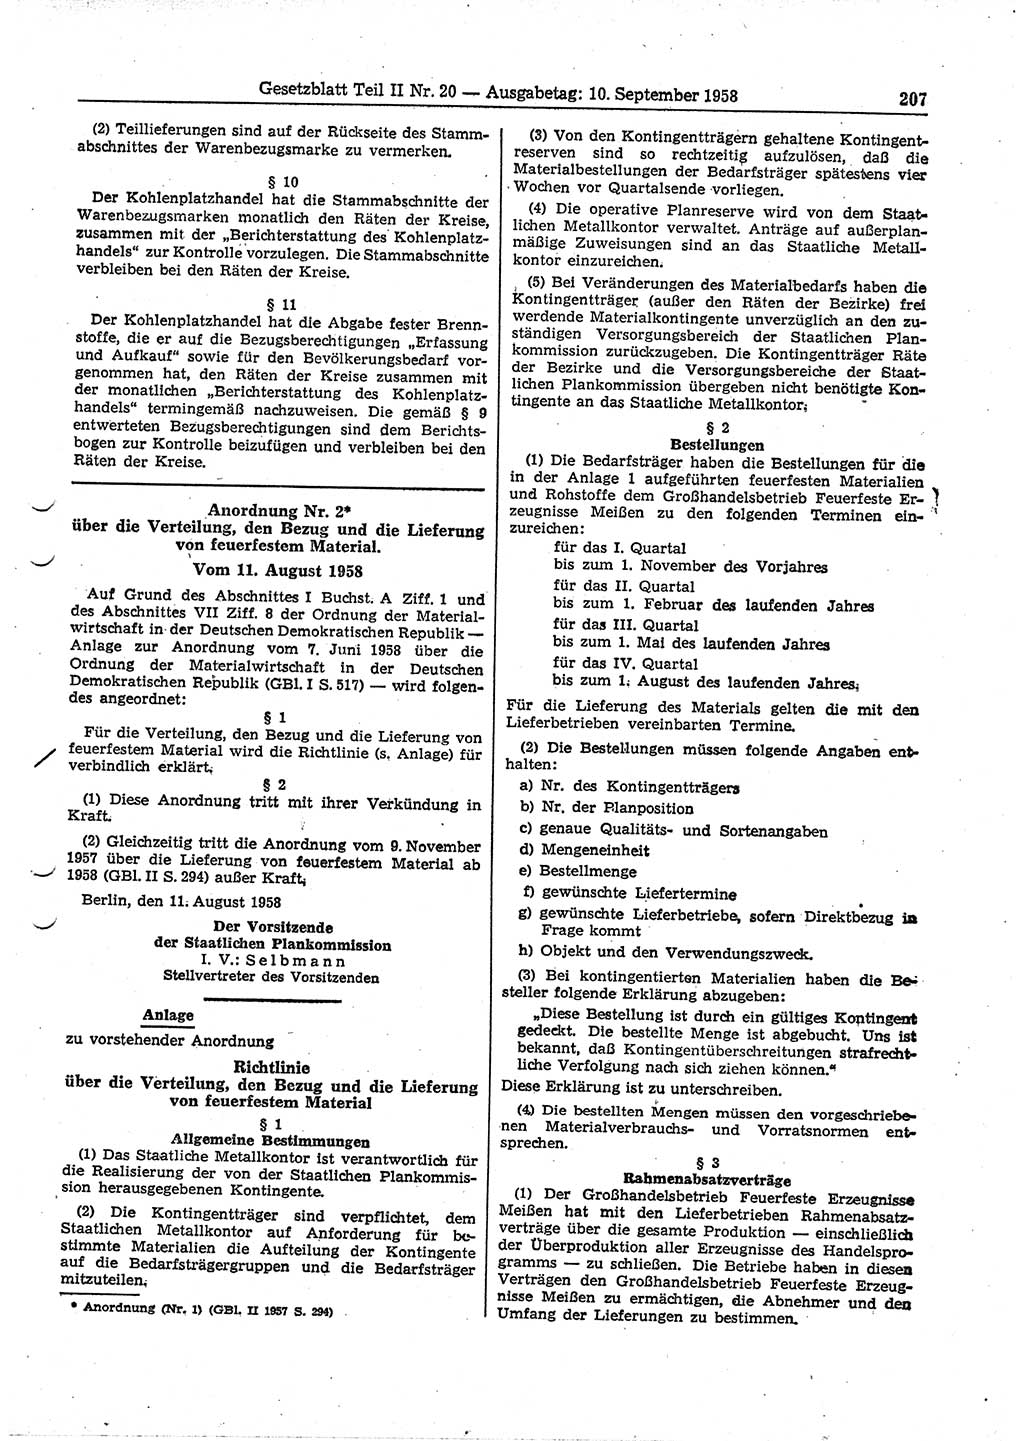 Gesetzblatt (GBl.) der Deutschen Demokratischen Republik (DDR) Teil ⅠⅠ 1958, Seite 207 (GBl. DDR ⅠⅠ 1958, S. 207)